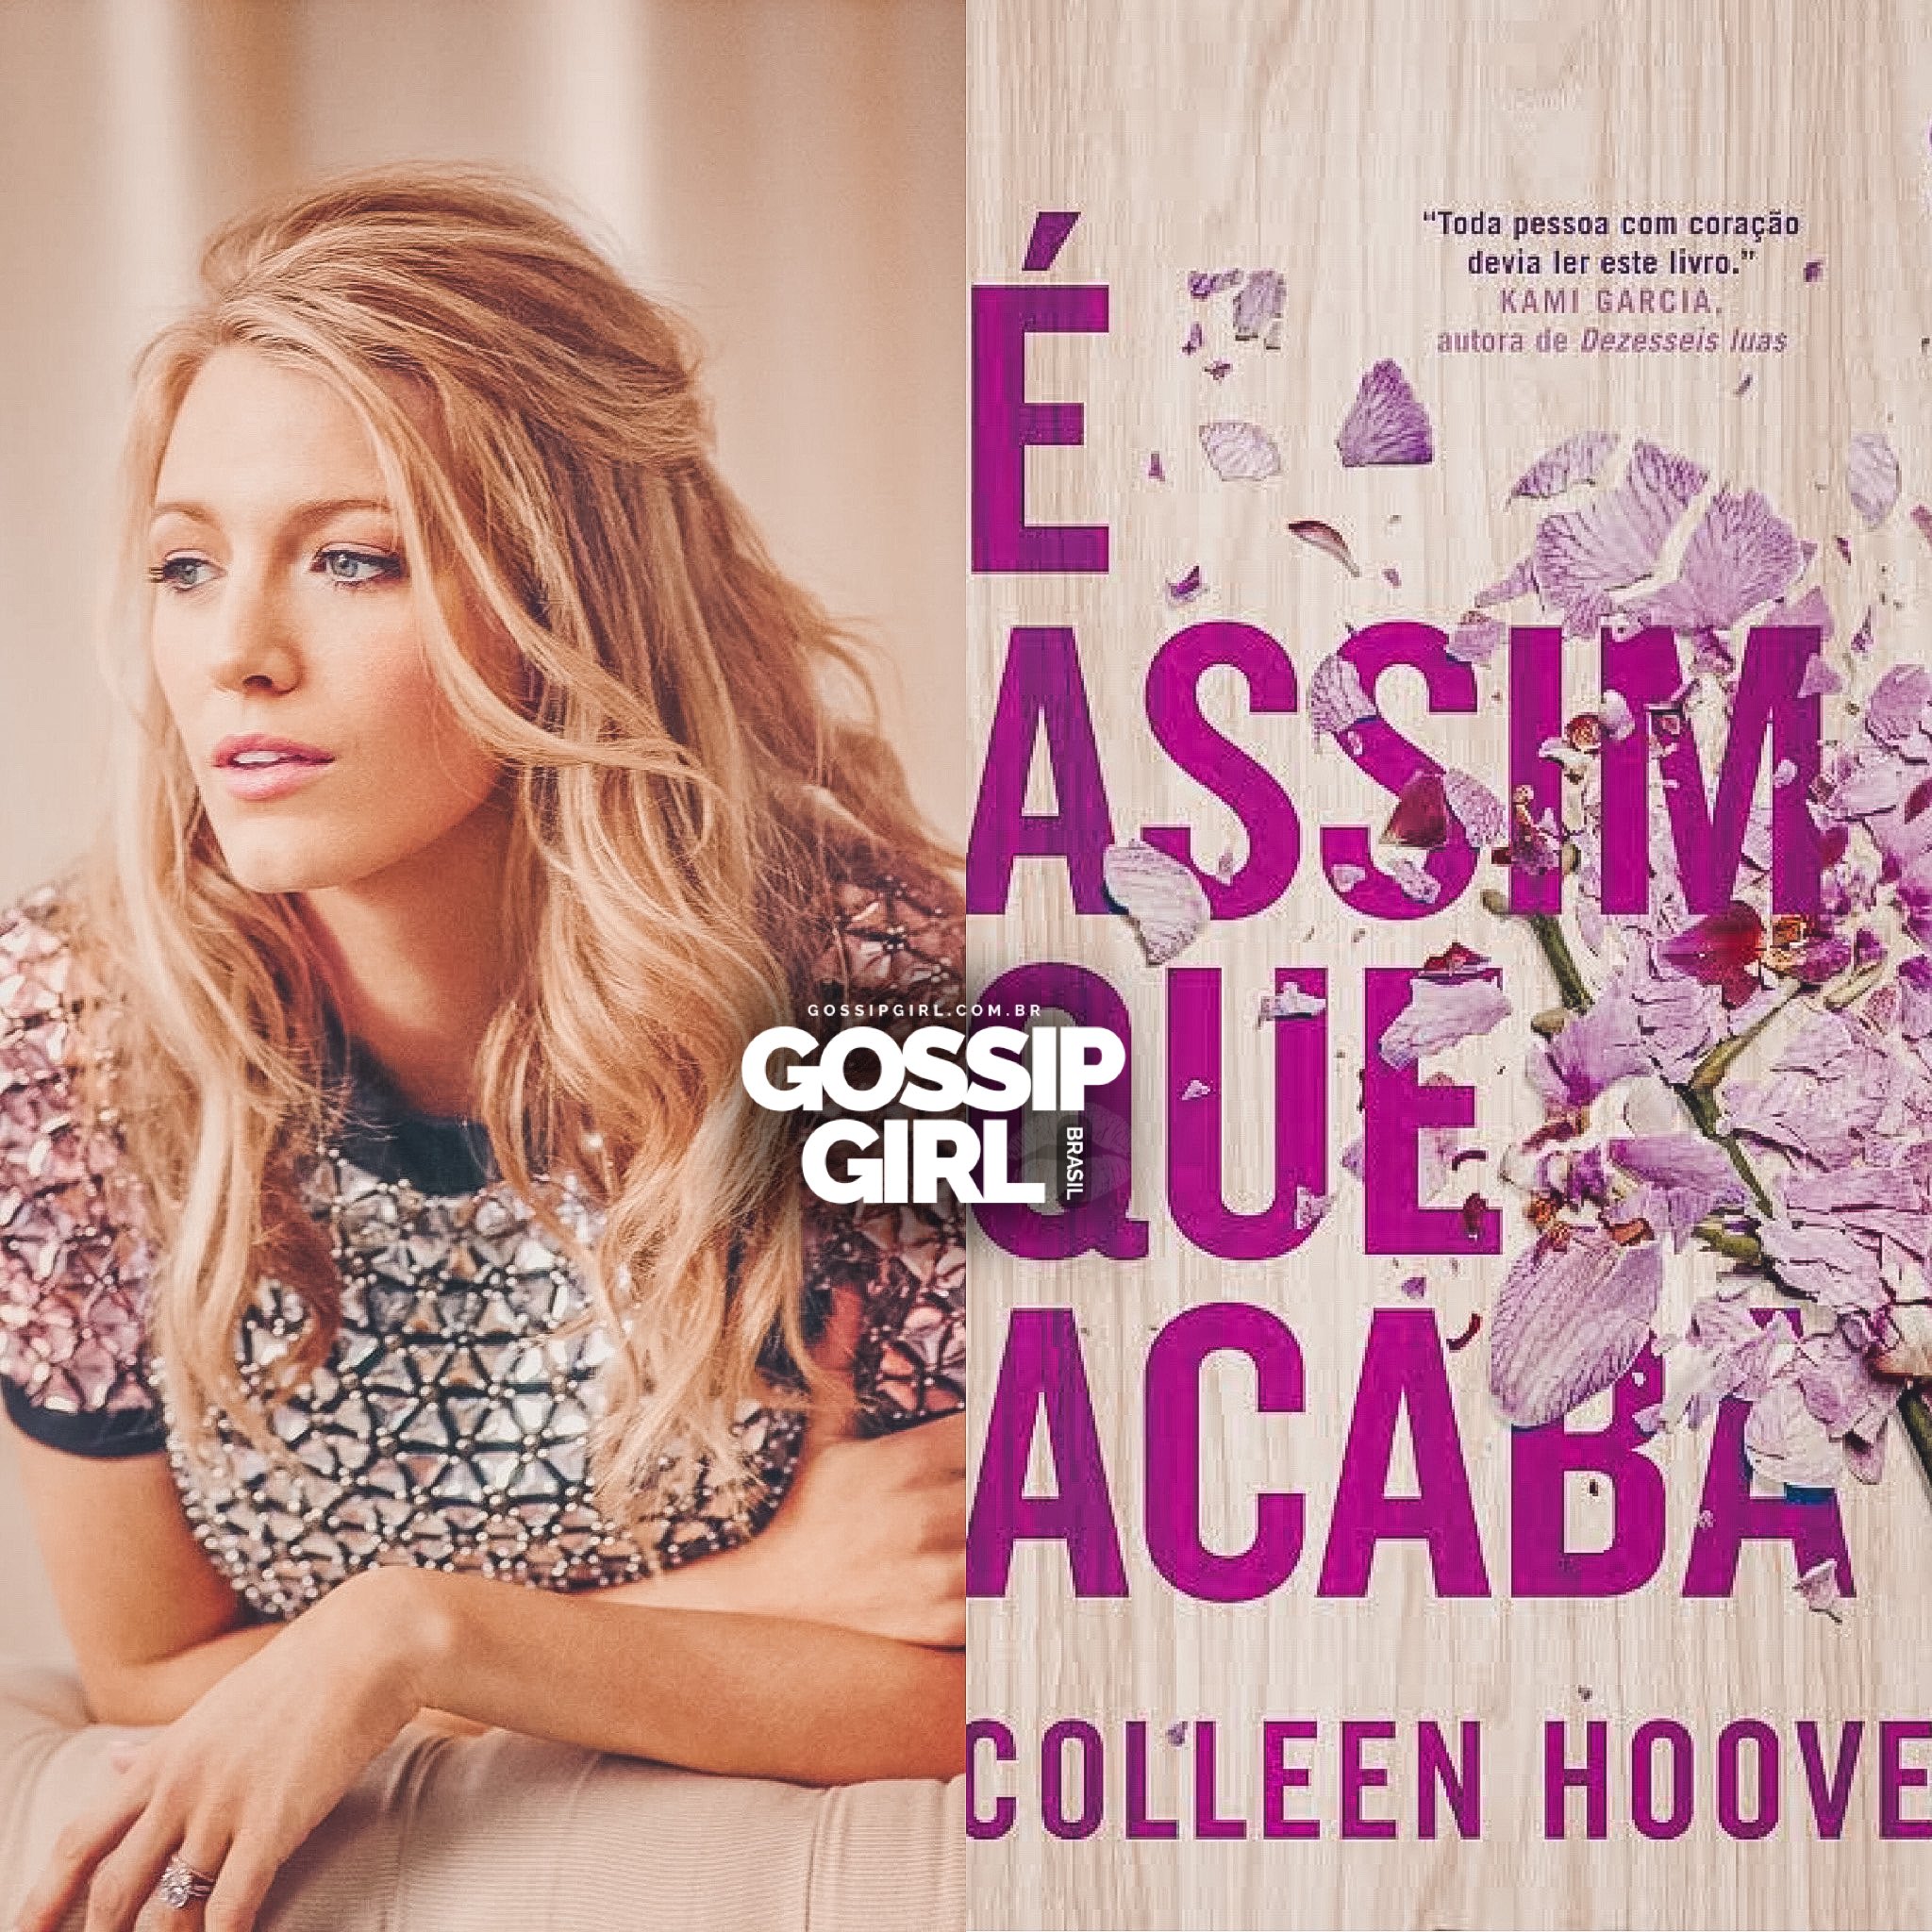 Gossip Girl Brasil (@gossipgirlcombr) / X